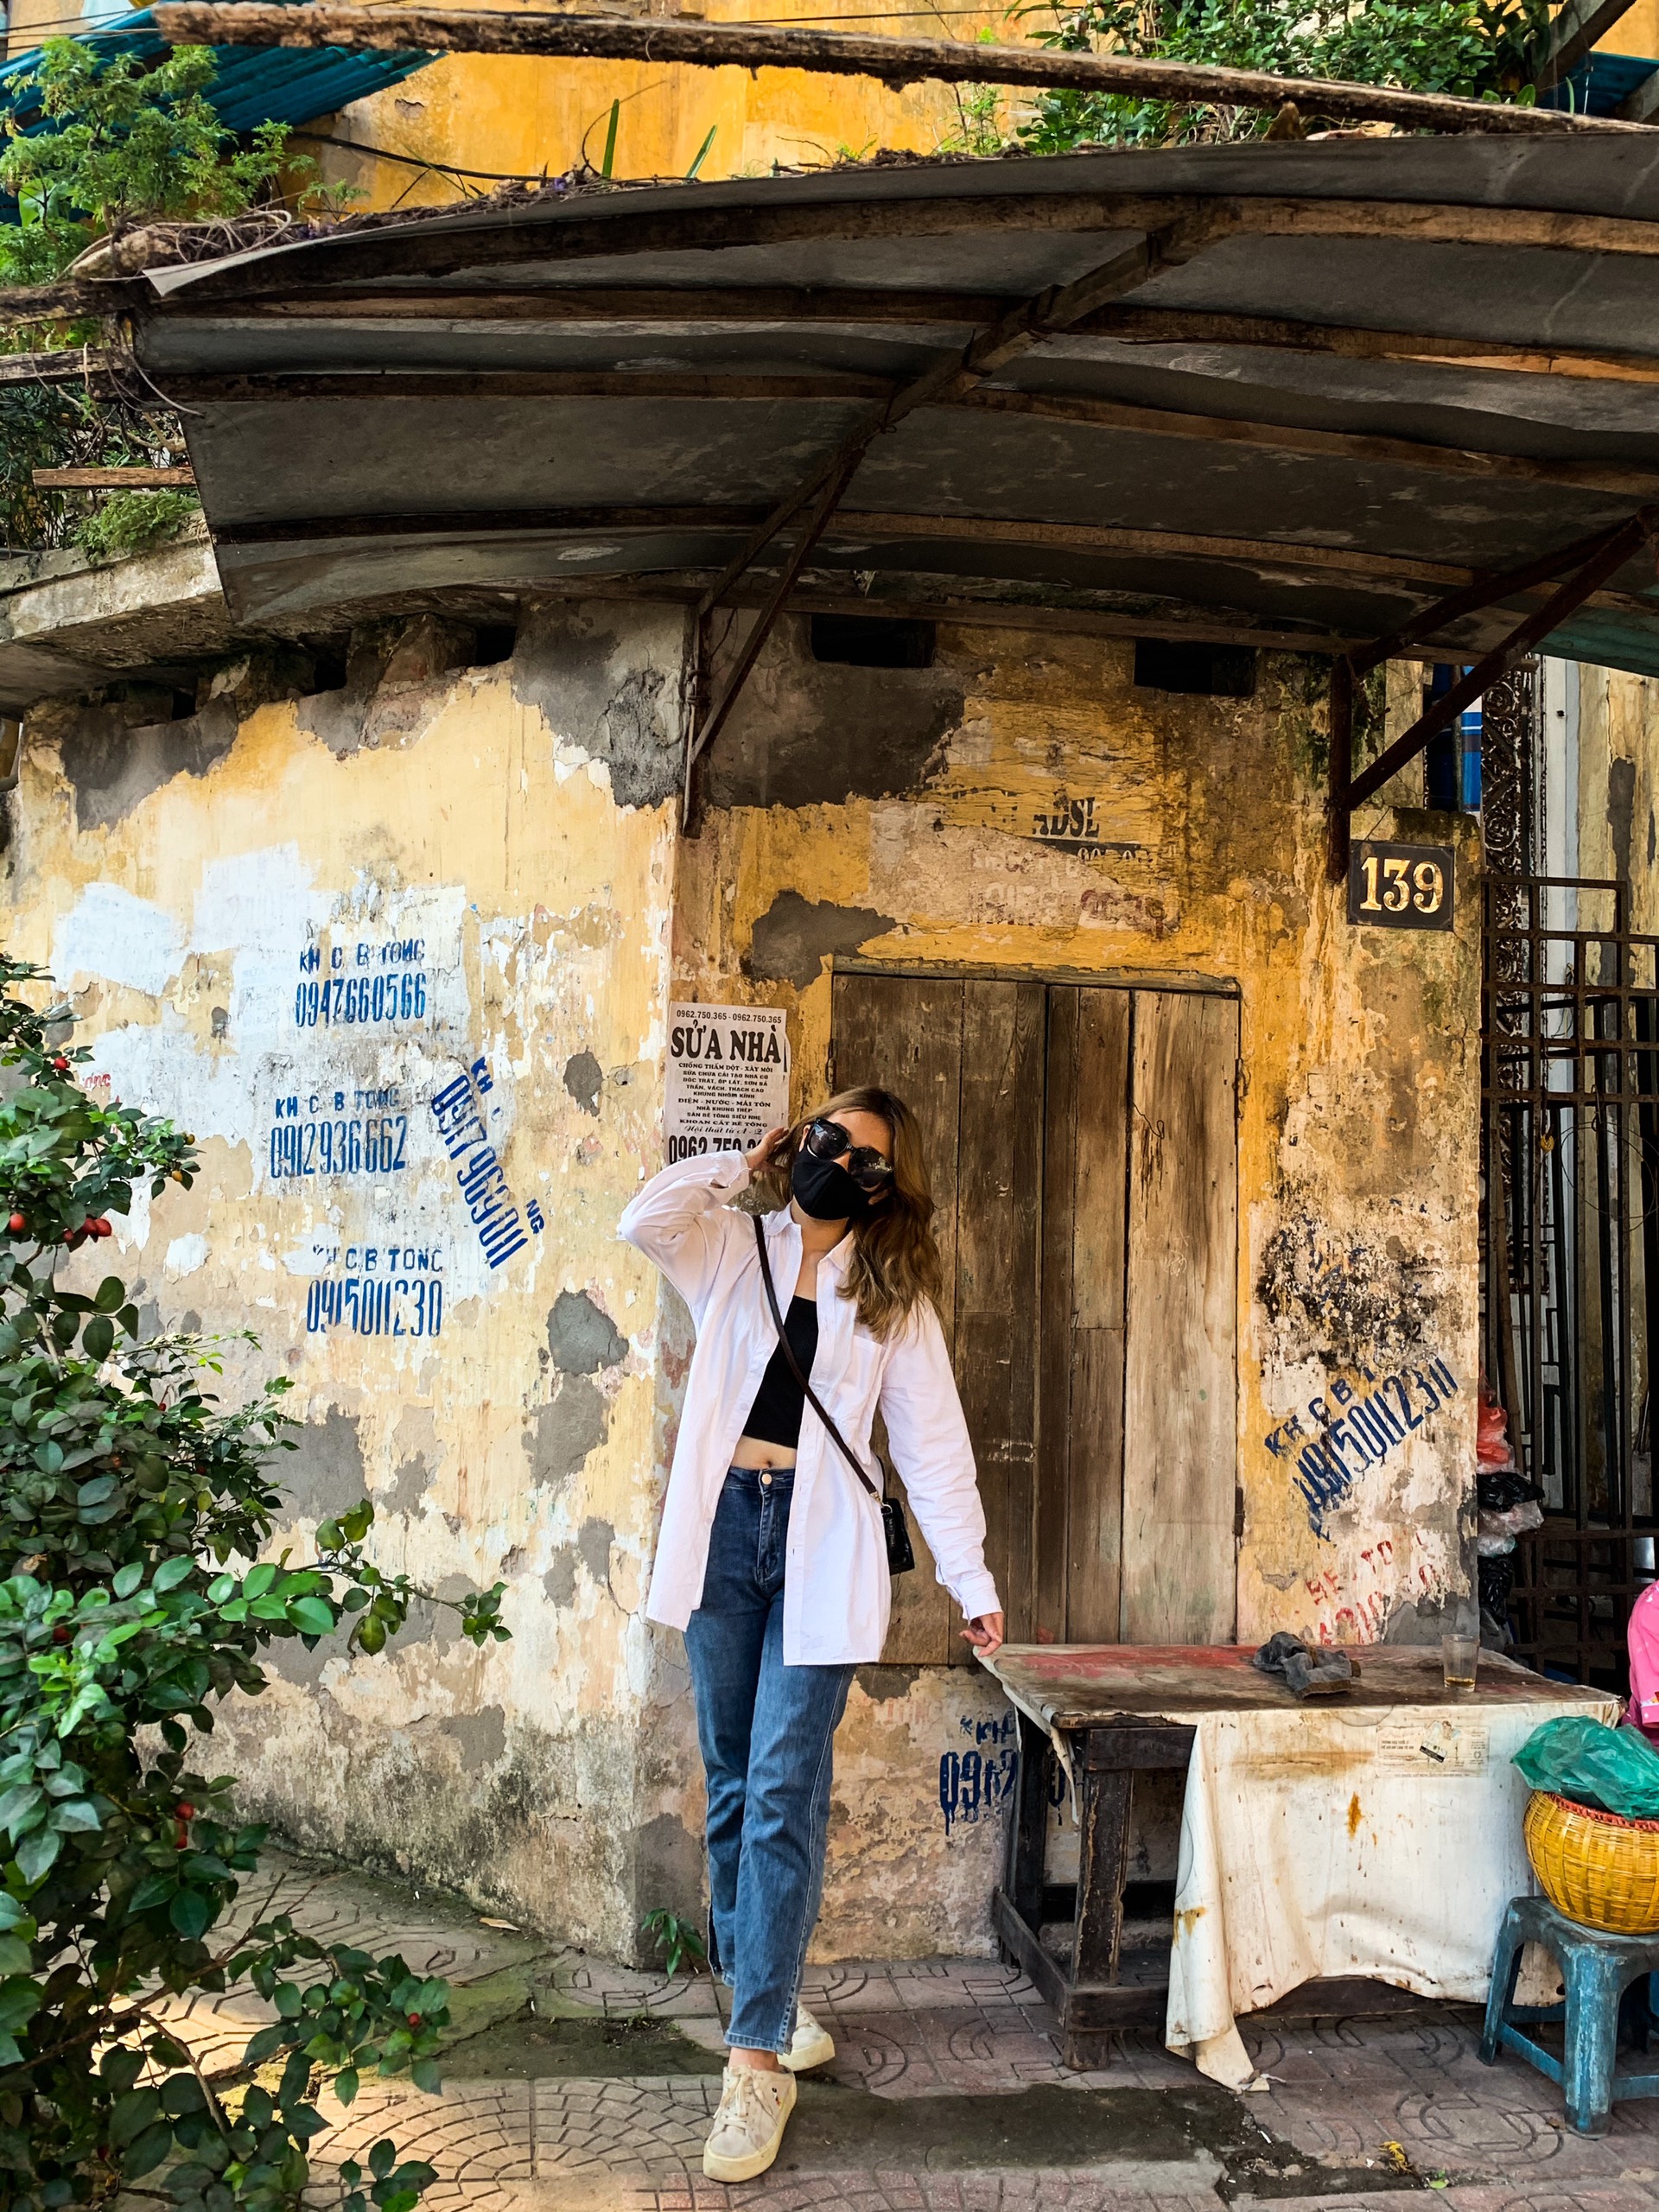 Phố cổ Hà Nội: Hãy cùng đến với phố cổ Hà Nội - một trong những khu phố lịch sử đẹp nhất tại Việt Nam. Đây là nơi mà bạn có thể tìm thấy những ngôi nhà cổ miền Bắc với kiến trúc độc đáo và phong cách làm việc của người dân địa phương. Hãy đến và khám phá điều kỳ diệu của phố cổ Hà Nội.